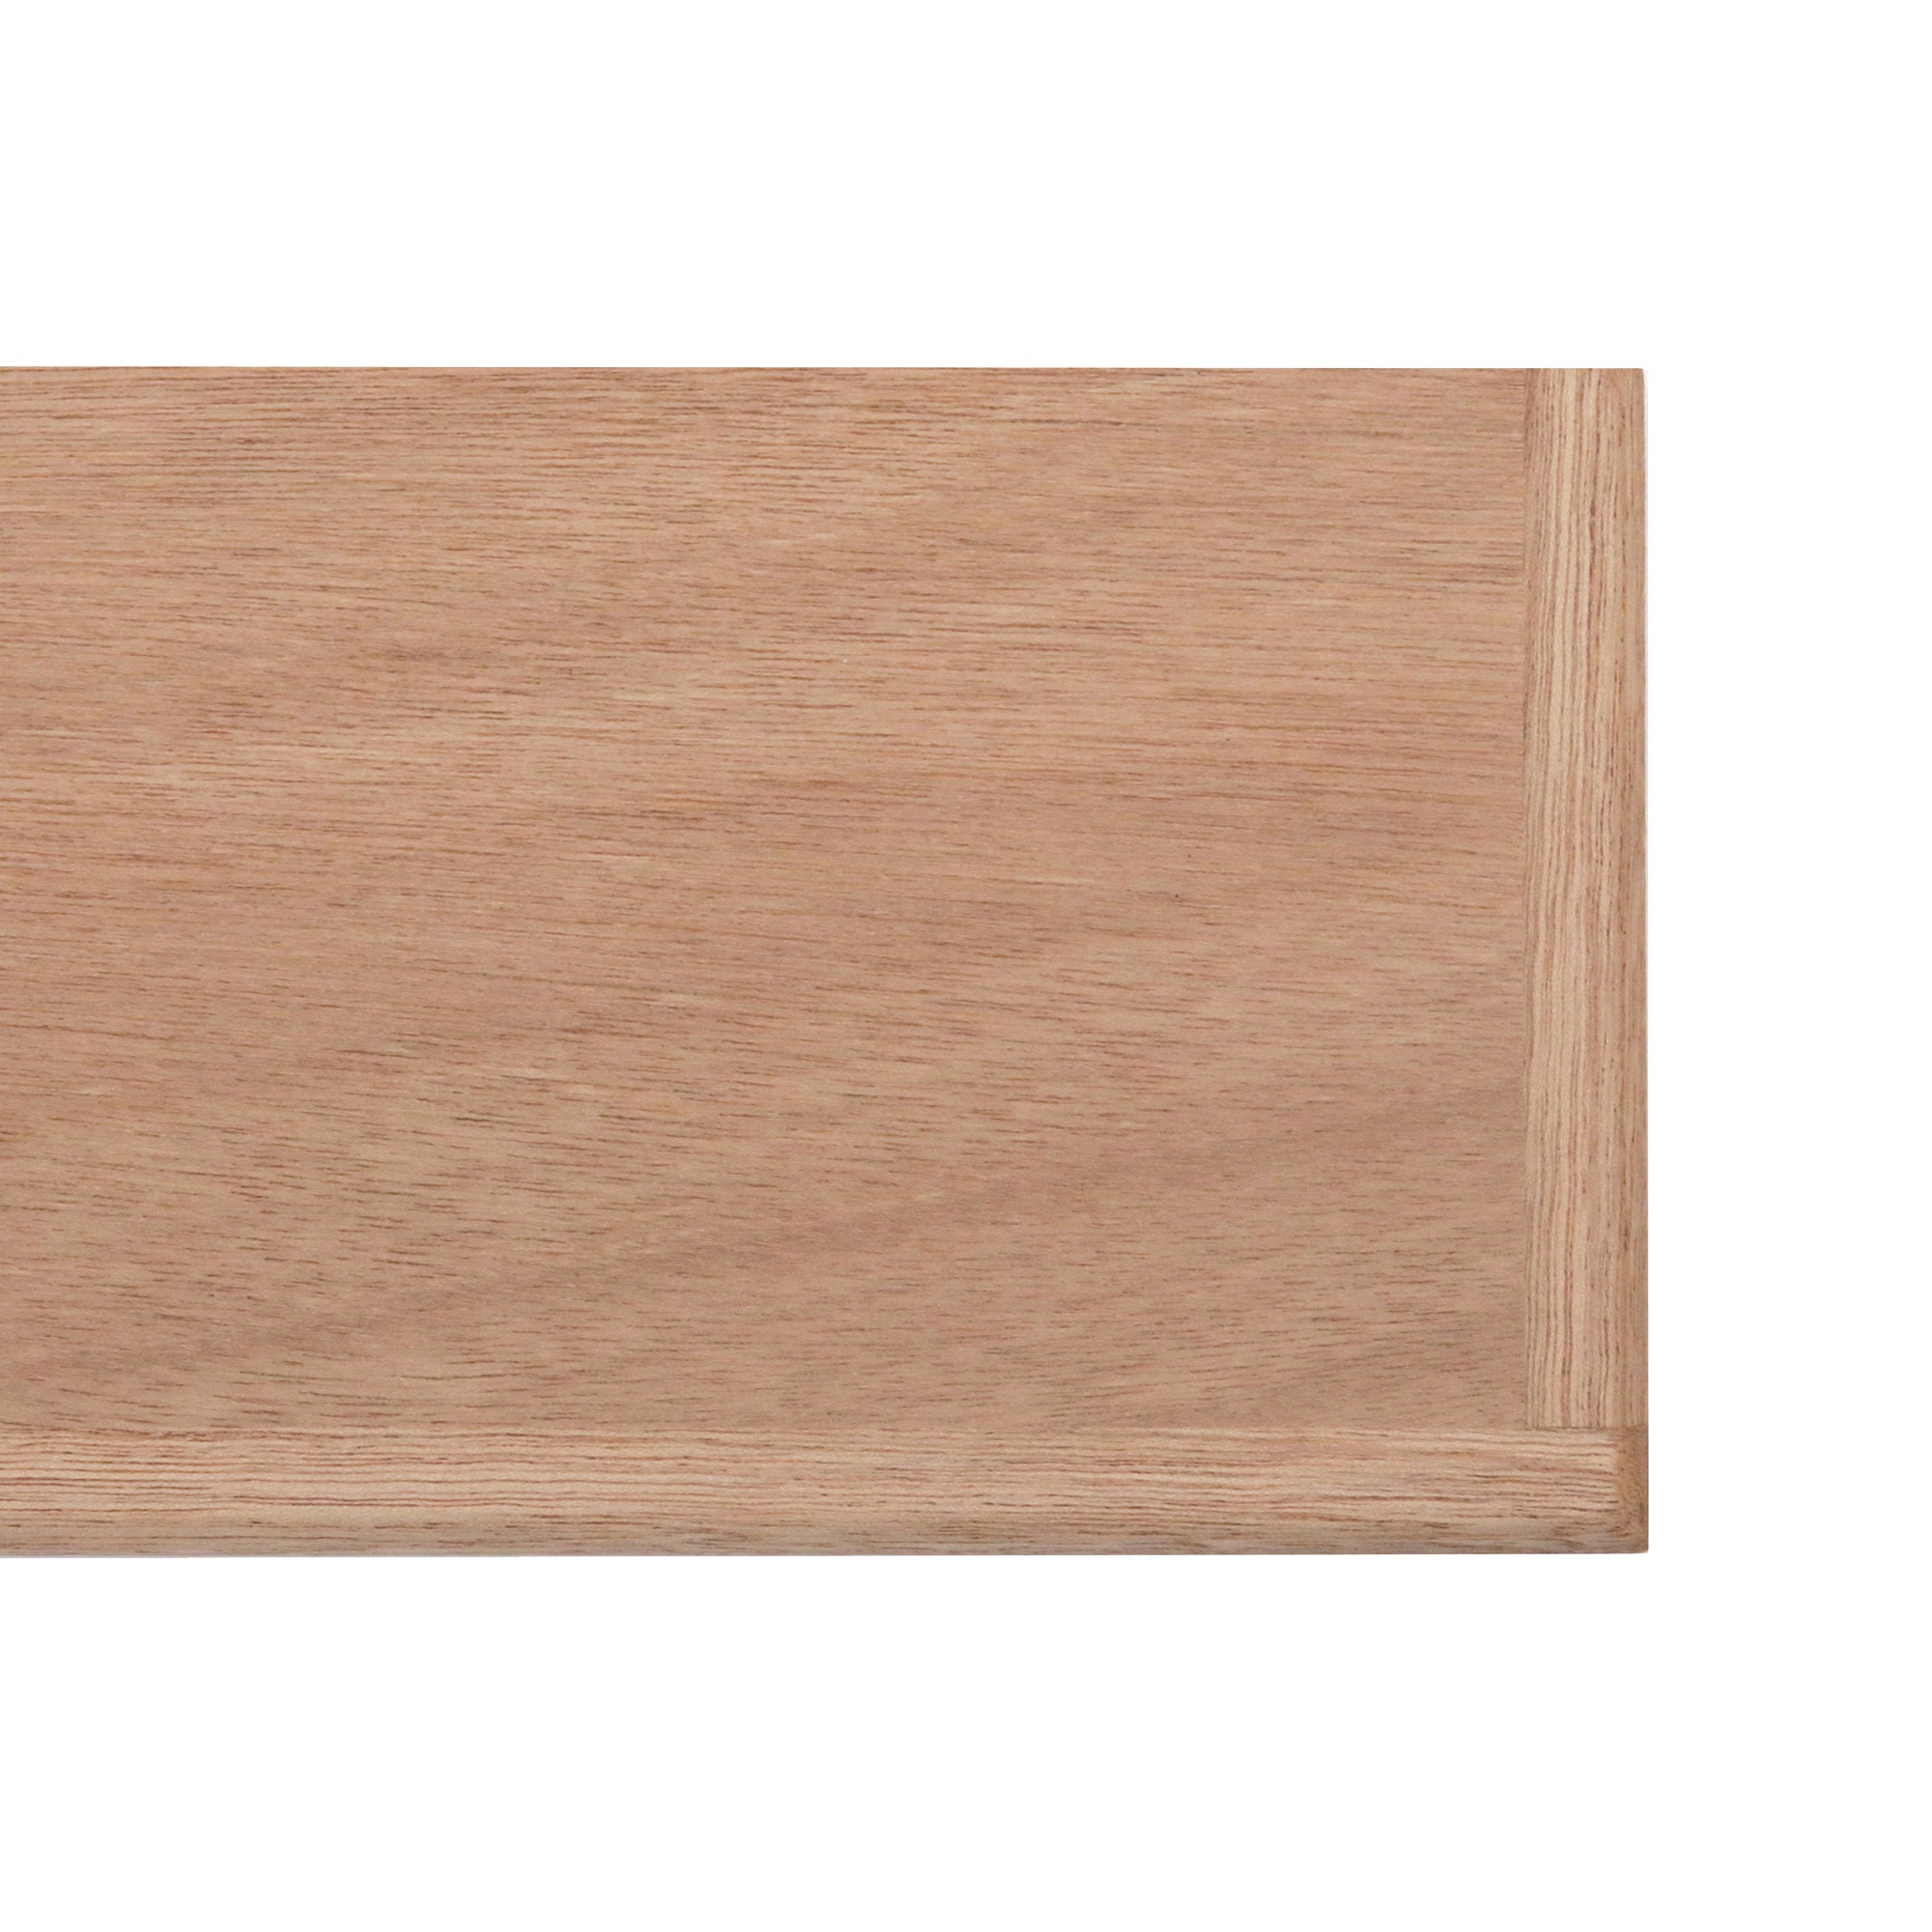 角丸棚板 ラワン×ラワン D185 PS-CP002-06-G015 3方の木口をラワンで仕上げています